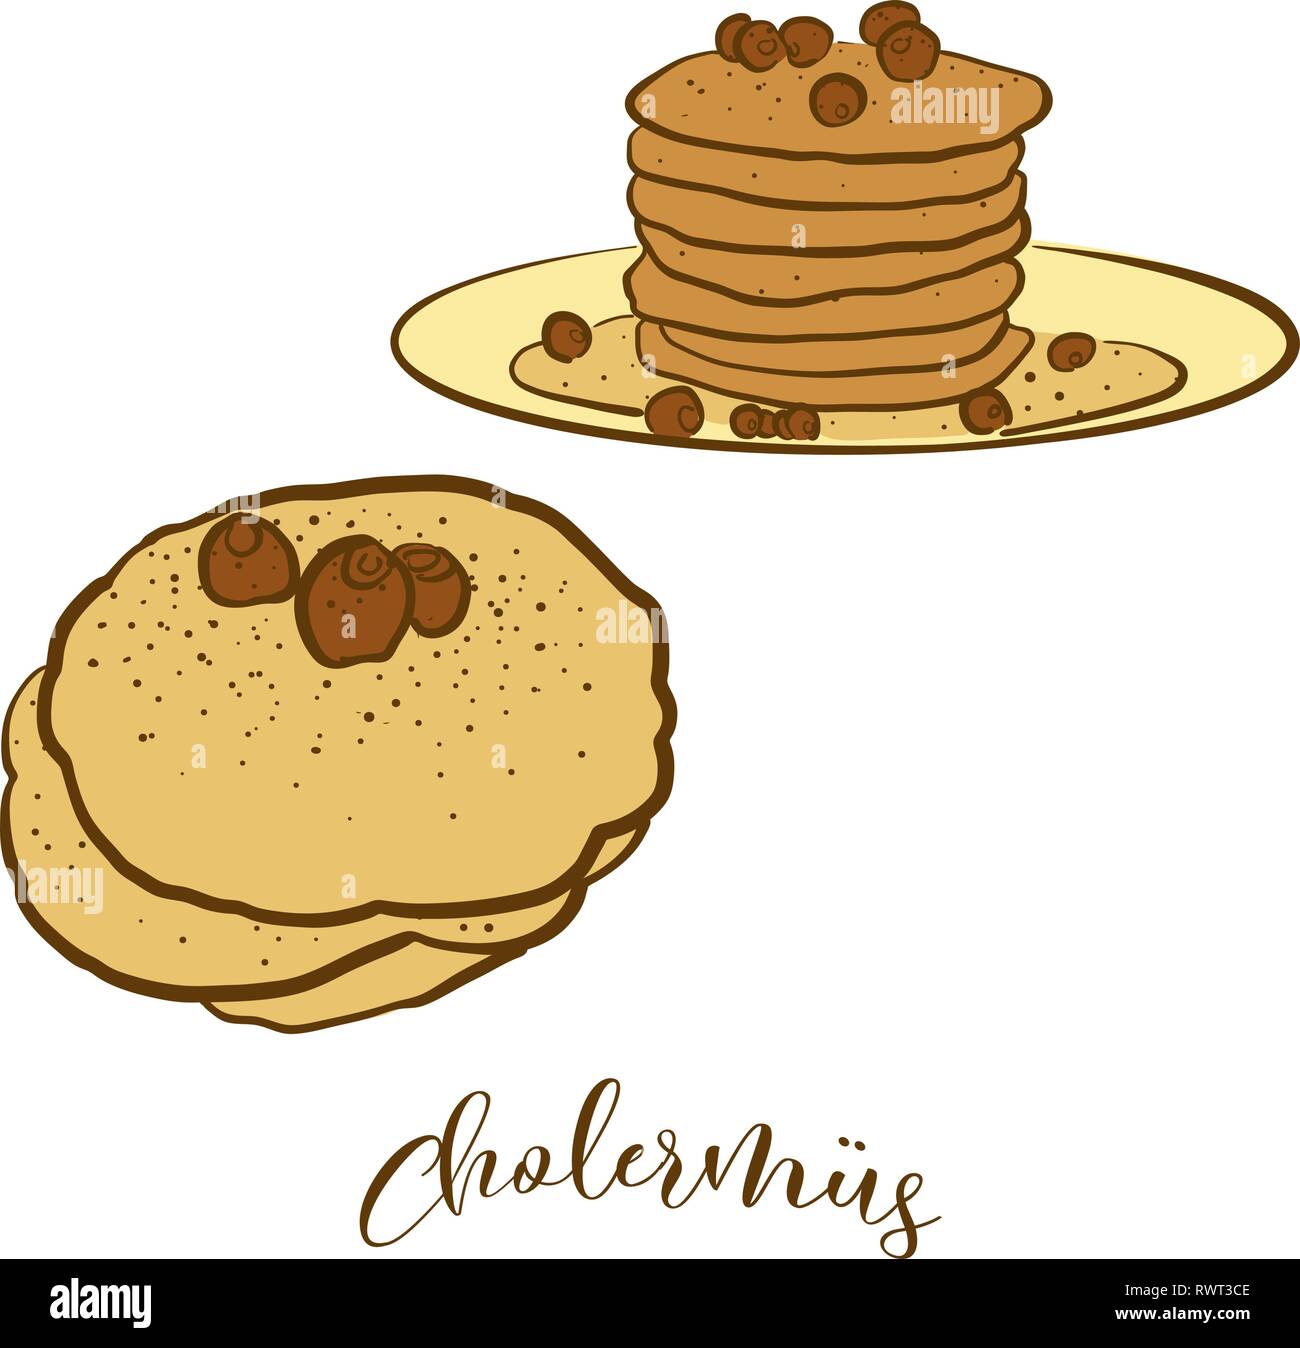 Farbige Skizzen von Cholermüs Brot. Vektor Zeichnung der Pfannkuchen essen, in der Regel in der Schweiz bekannt. Farbige Brot Abbildung Serie. Stock Vektor